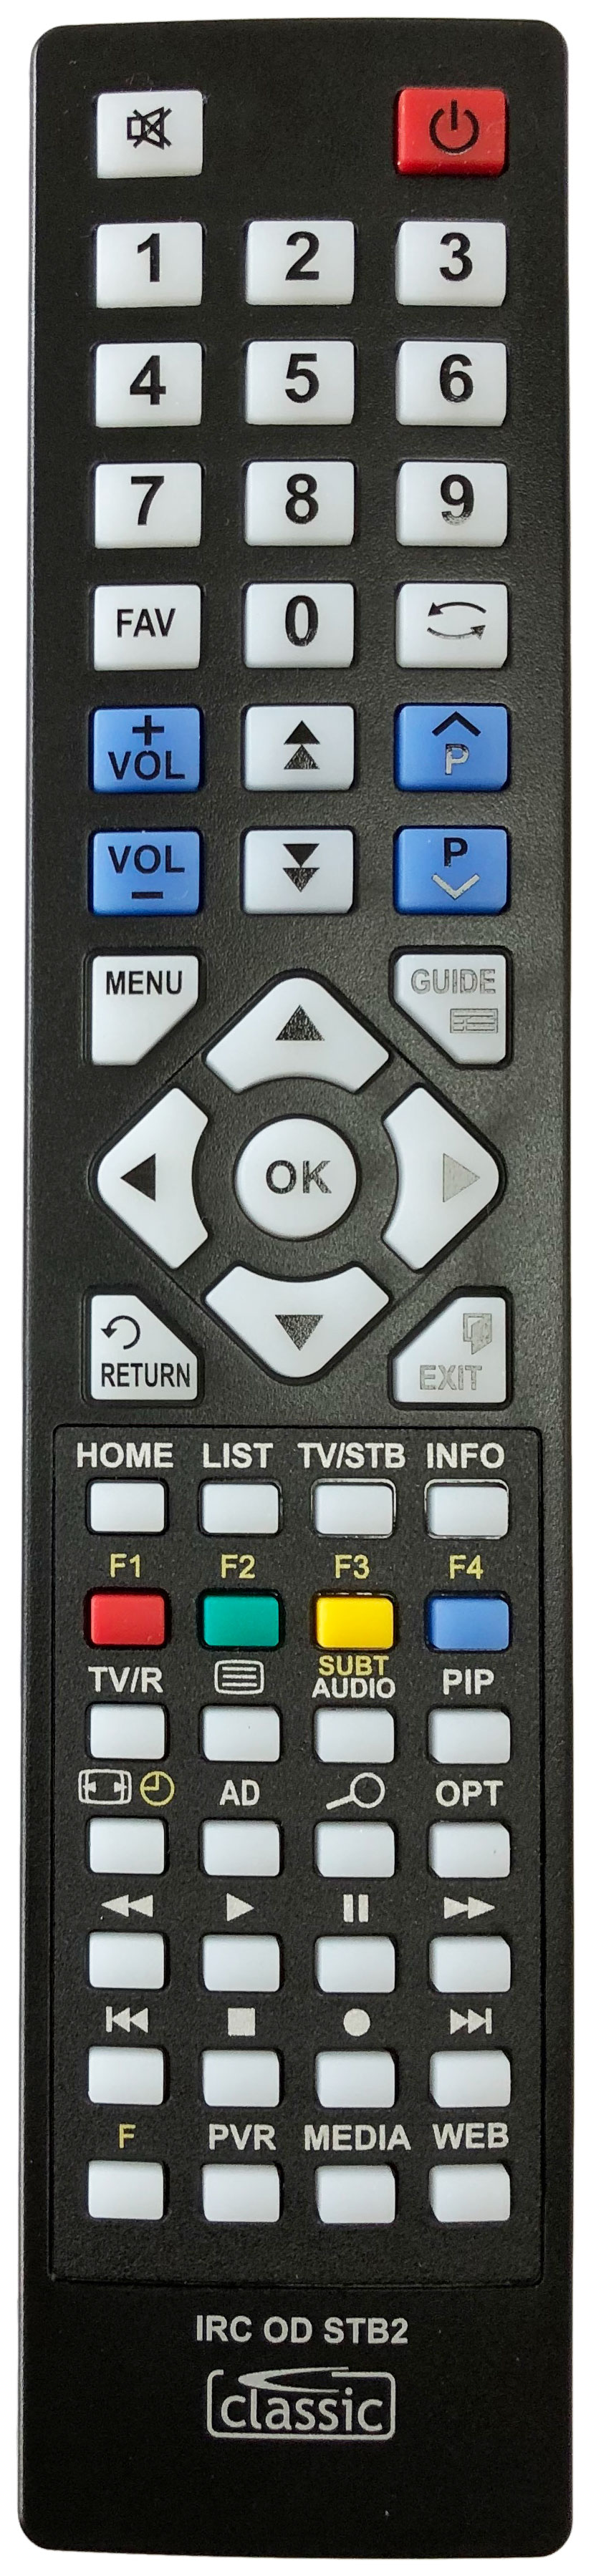 HUMAX RT-531B Remote Control Alternative